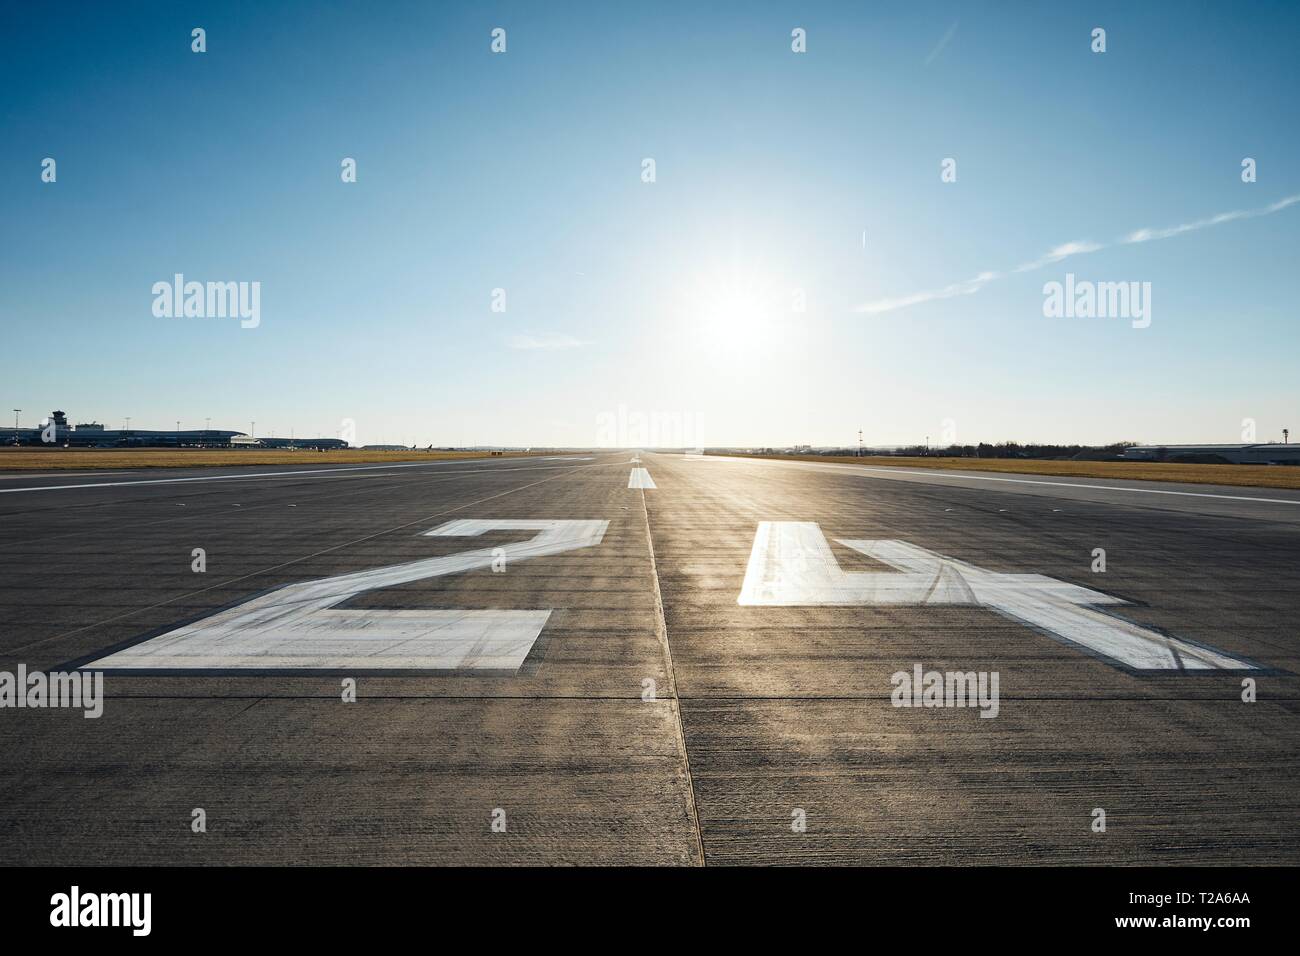 Livello di superficie della pista di aeroporto con la segnaletica stradale e il numero 24 contro il cielo chiaro. Foto Stock